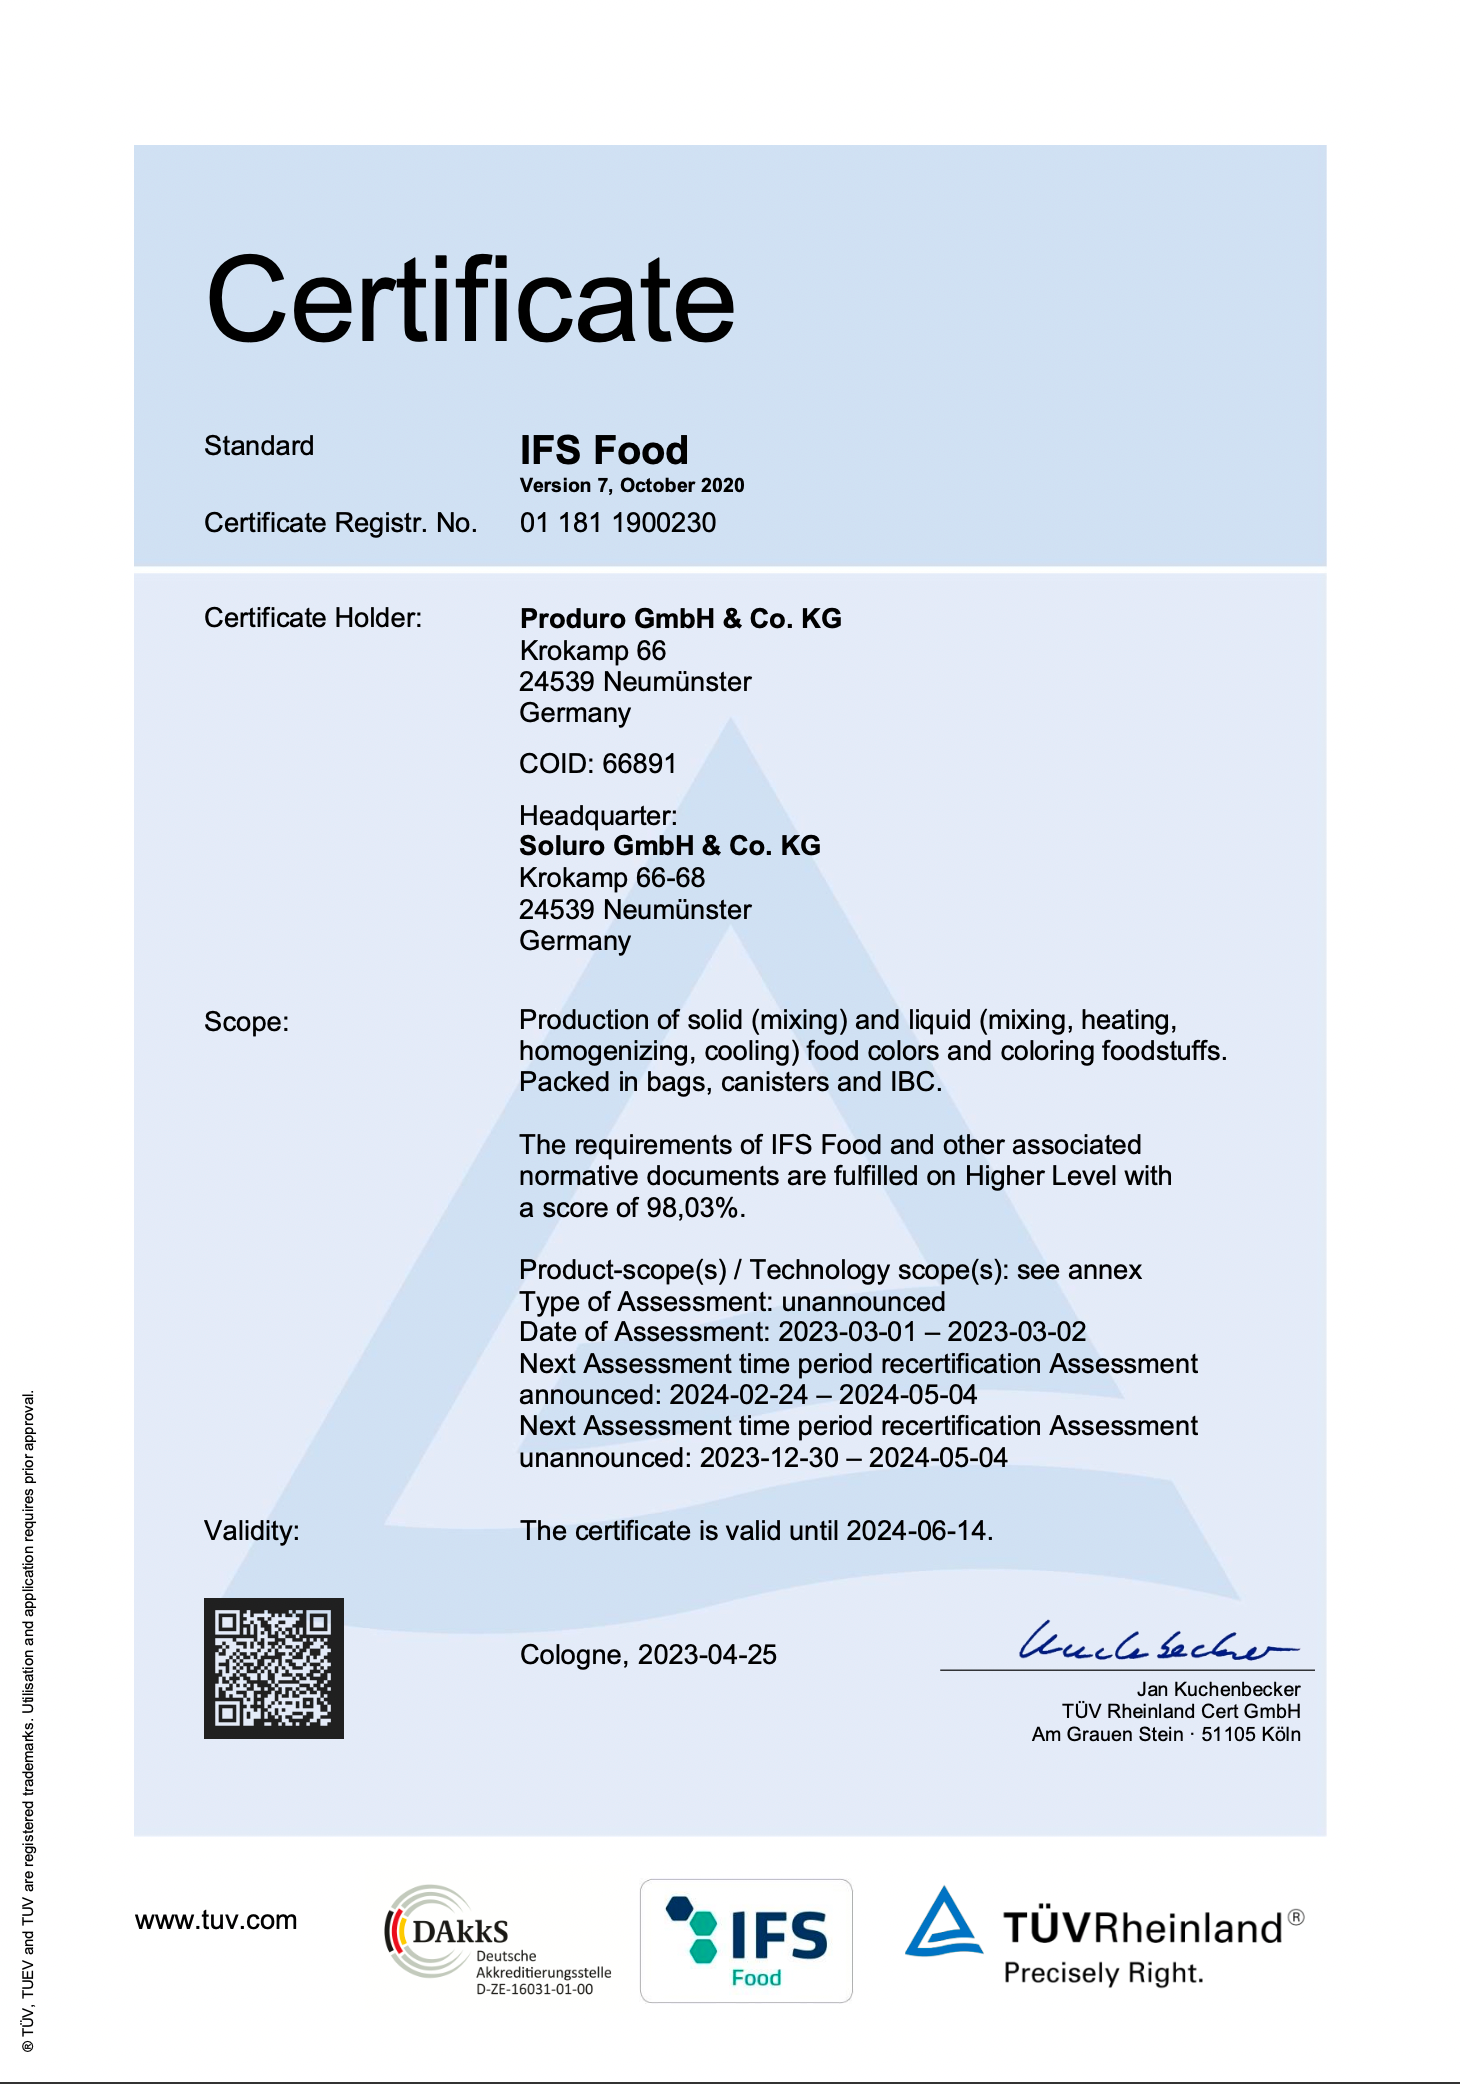 Soluro IFS Certificate